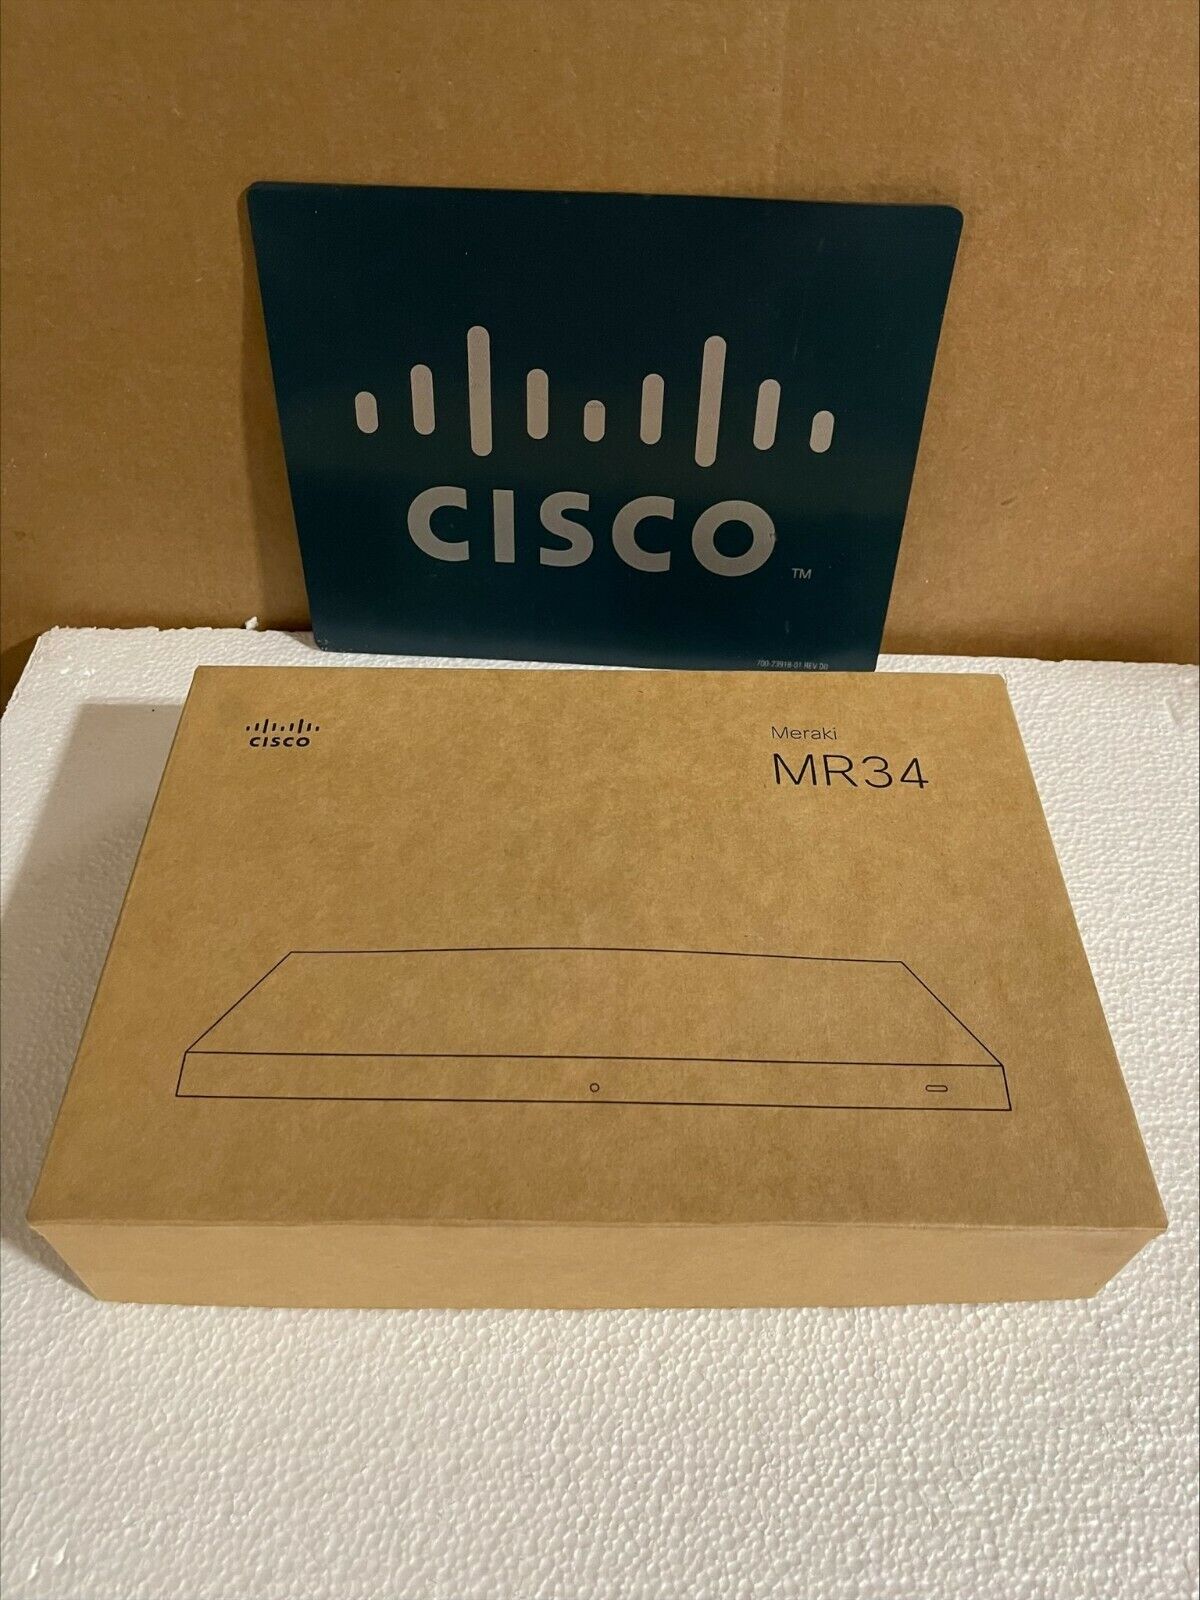 Cisco Meraki MR34-HW Unclaimed Wireless Access Point OPEN BOX